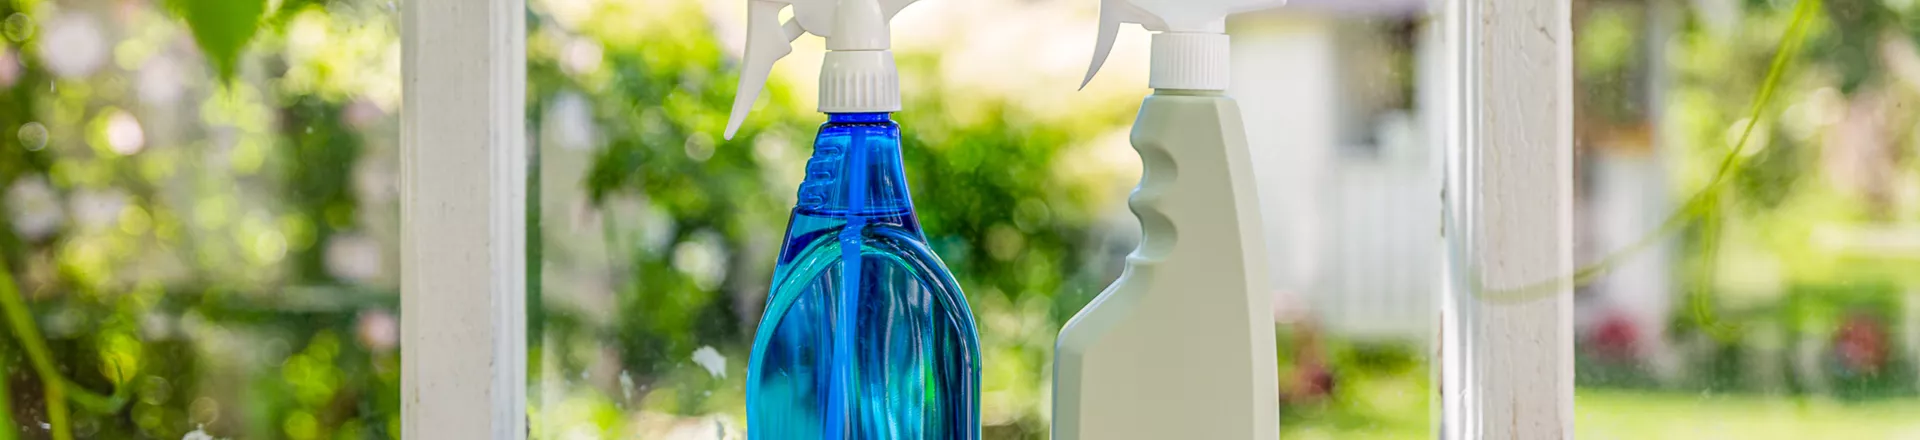 Sprayflaskor i plast perfekt som städförpackning